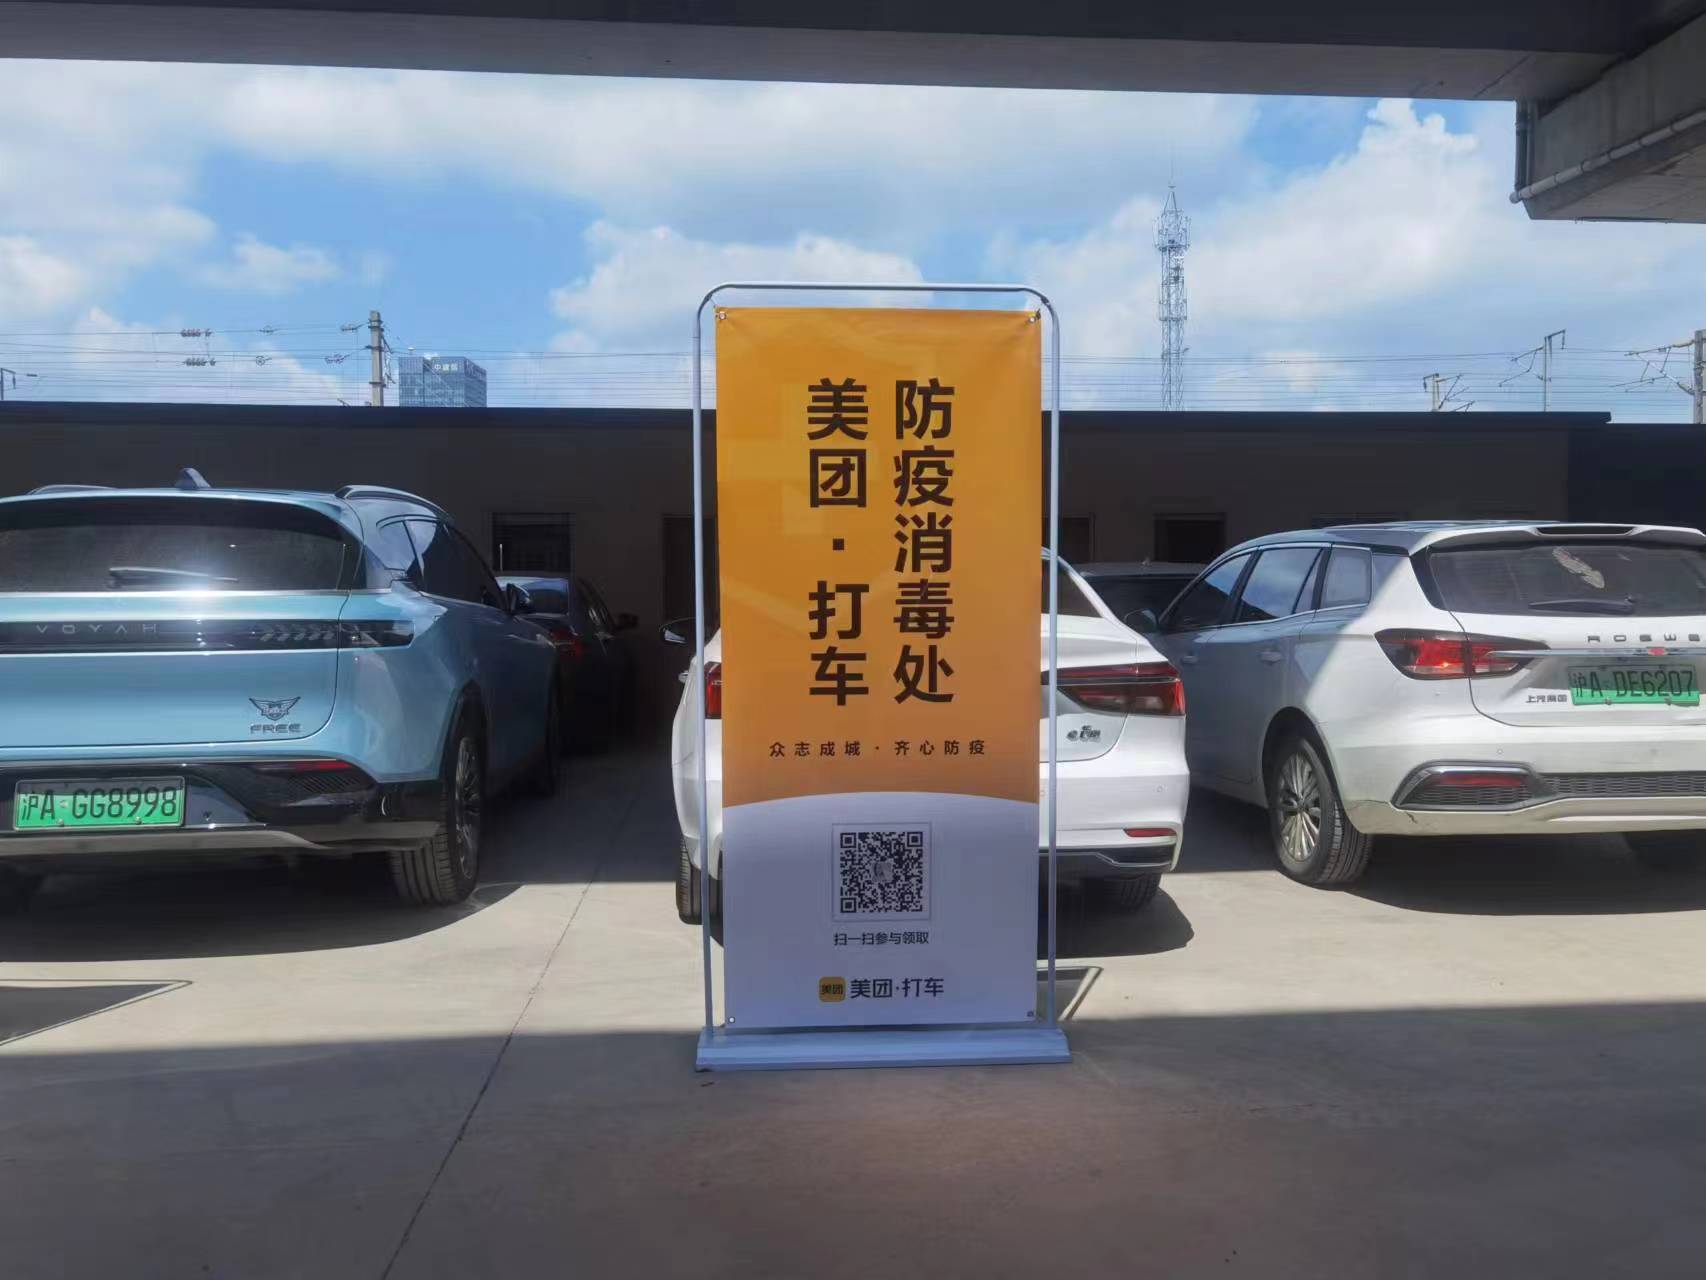 主变量网约车驾驶员资格证网上报名申请上海内幕曝光